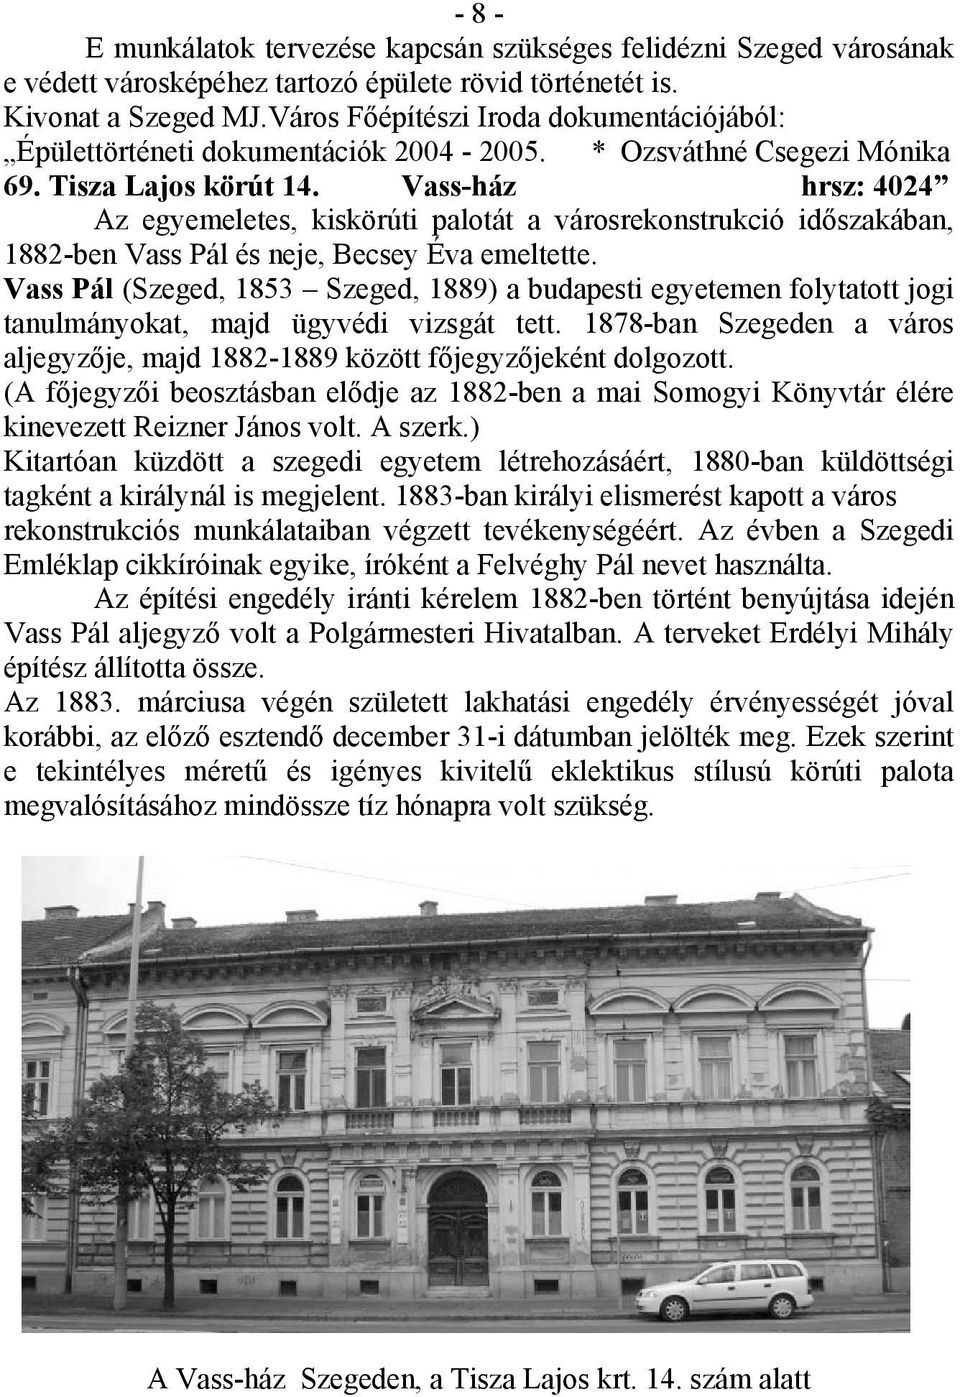 Vass-ház hrsz: 4024 Az egyemeletes, kiskörúti palotát a városrekonstrukció időszakában, 1882-ben Vass Pál és neje, Becsey Éva emeltette.